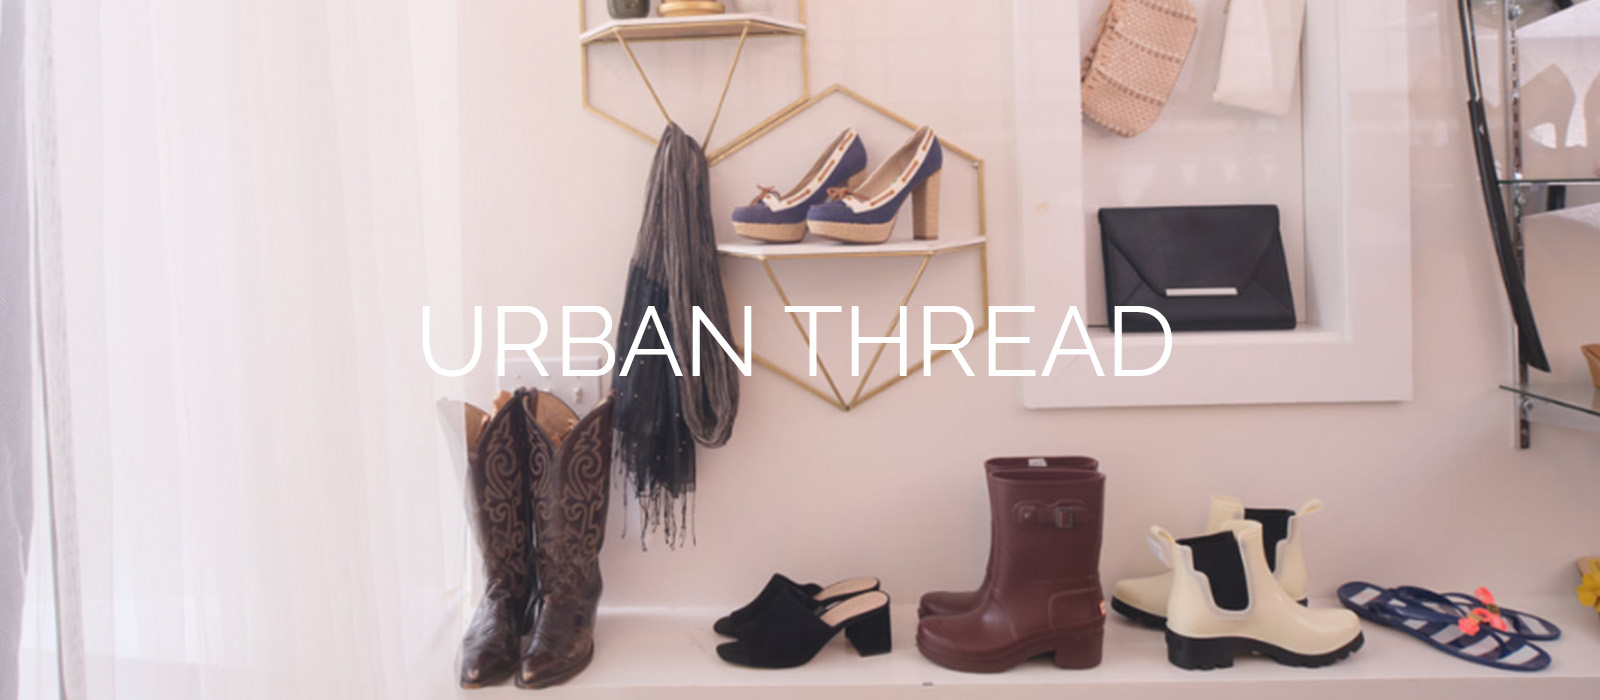 Urban thread